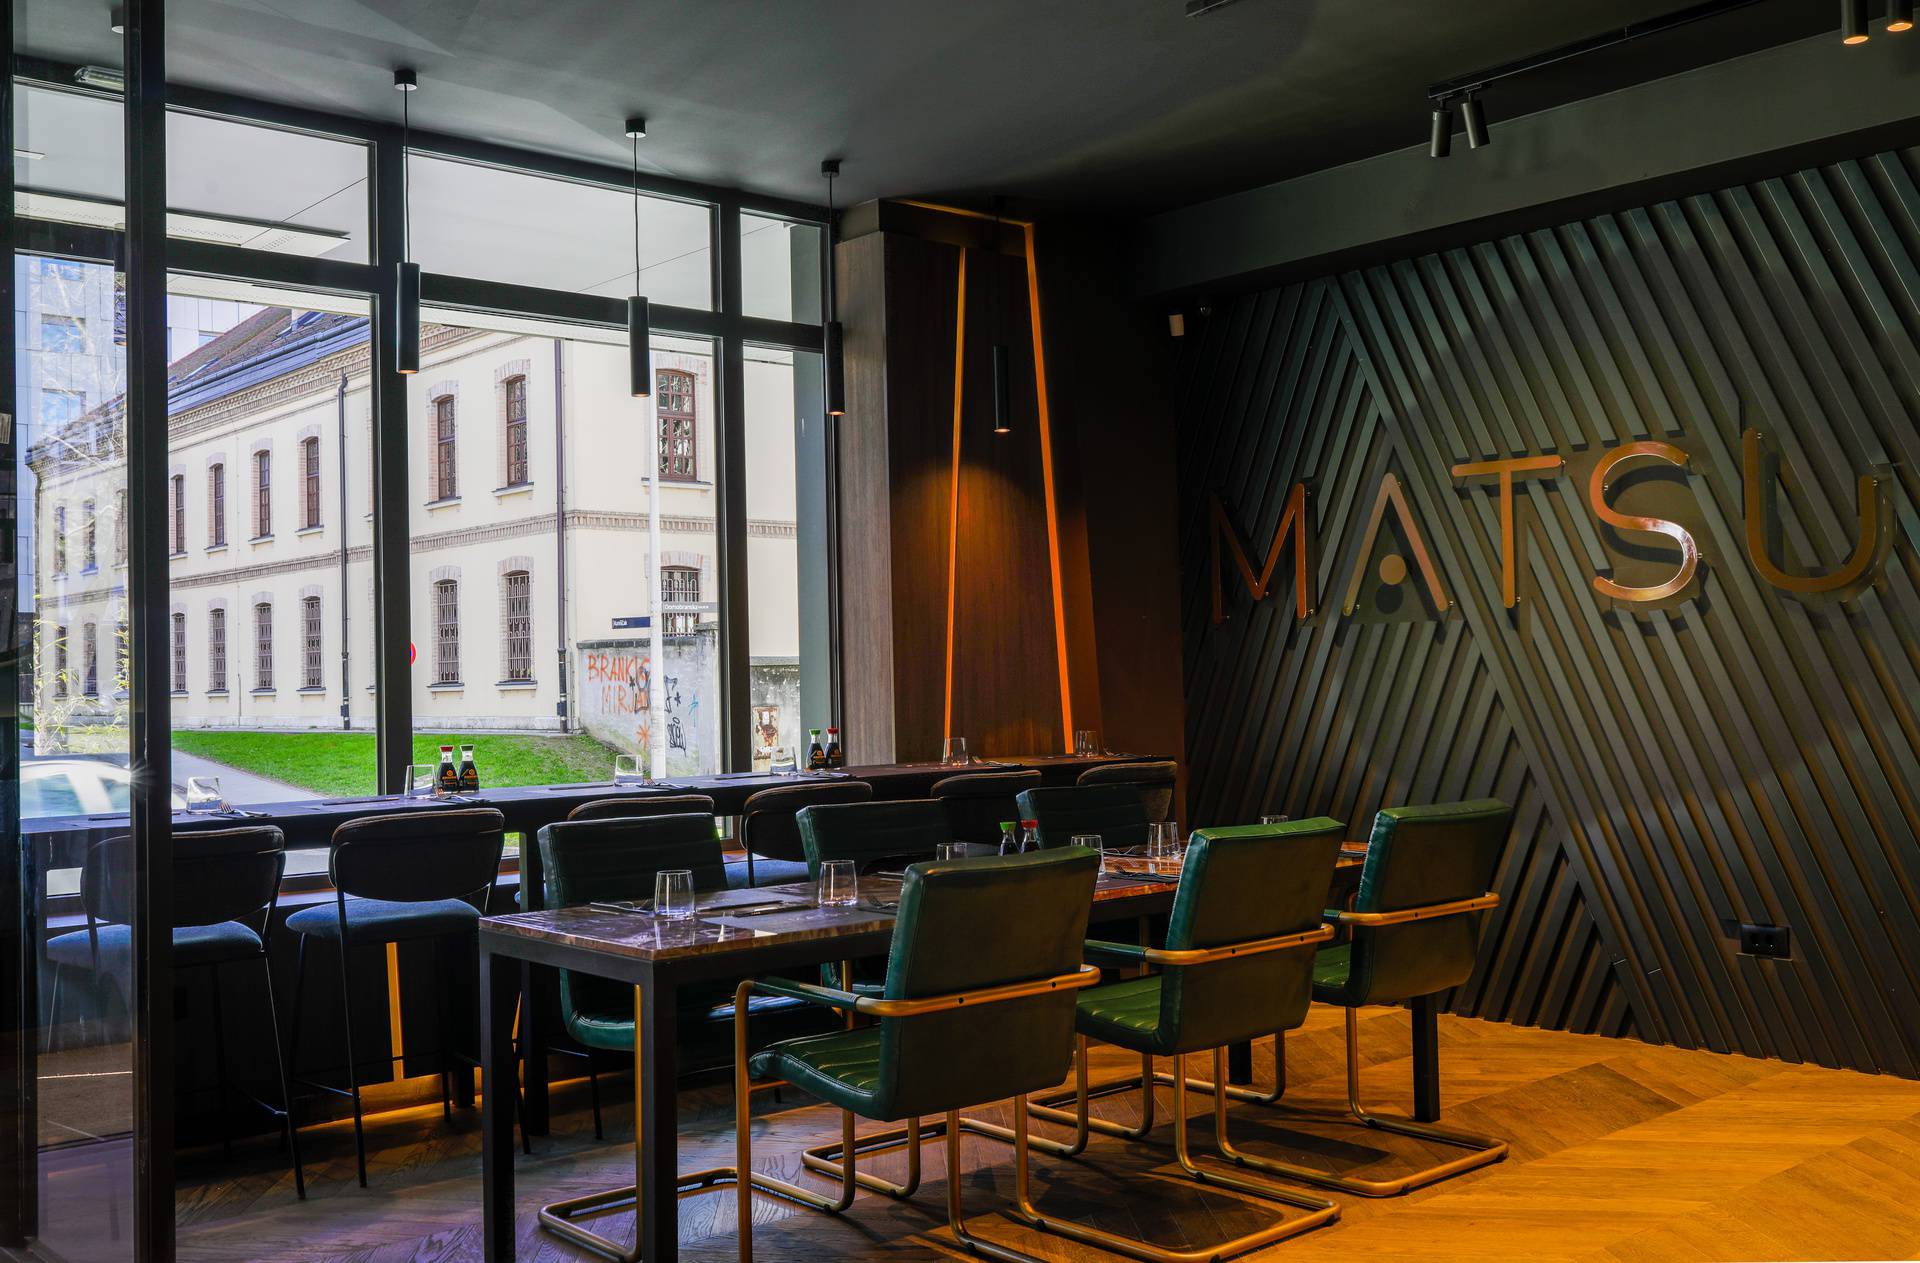 Novi asian fusion restoran u Zagrebu nudi azijske klasike u ugodnom ambijentu